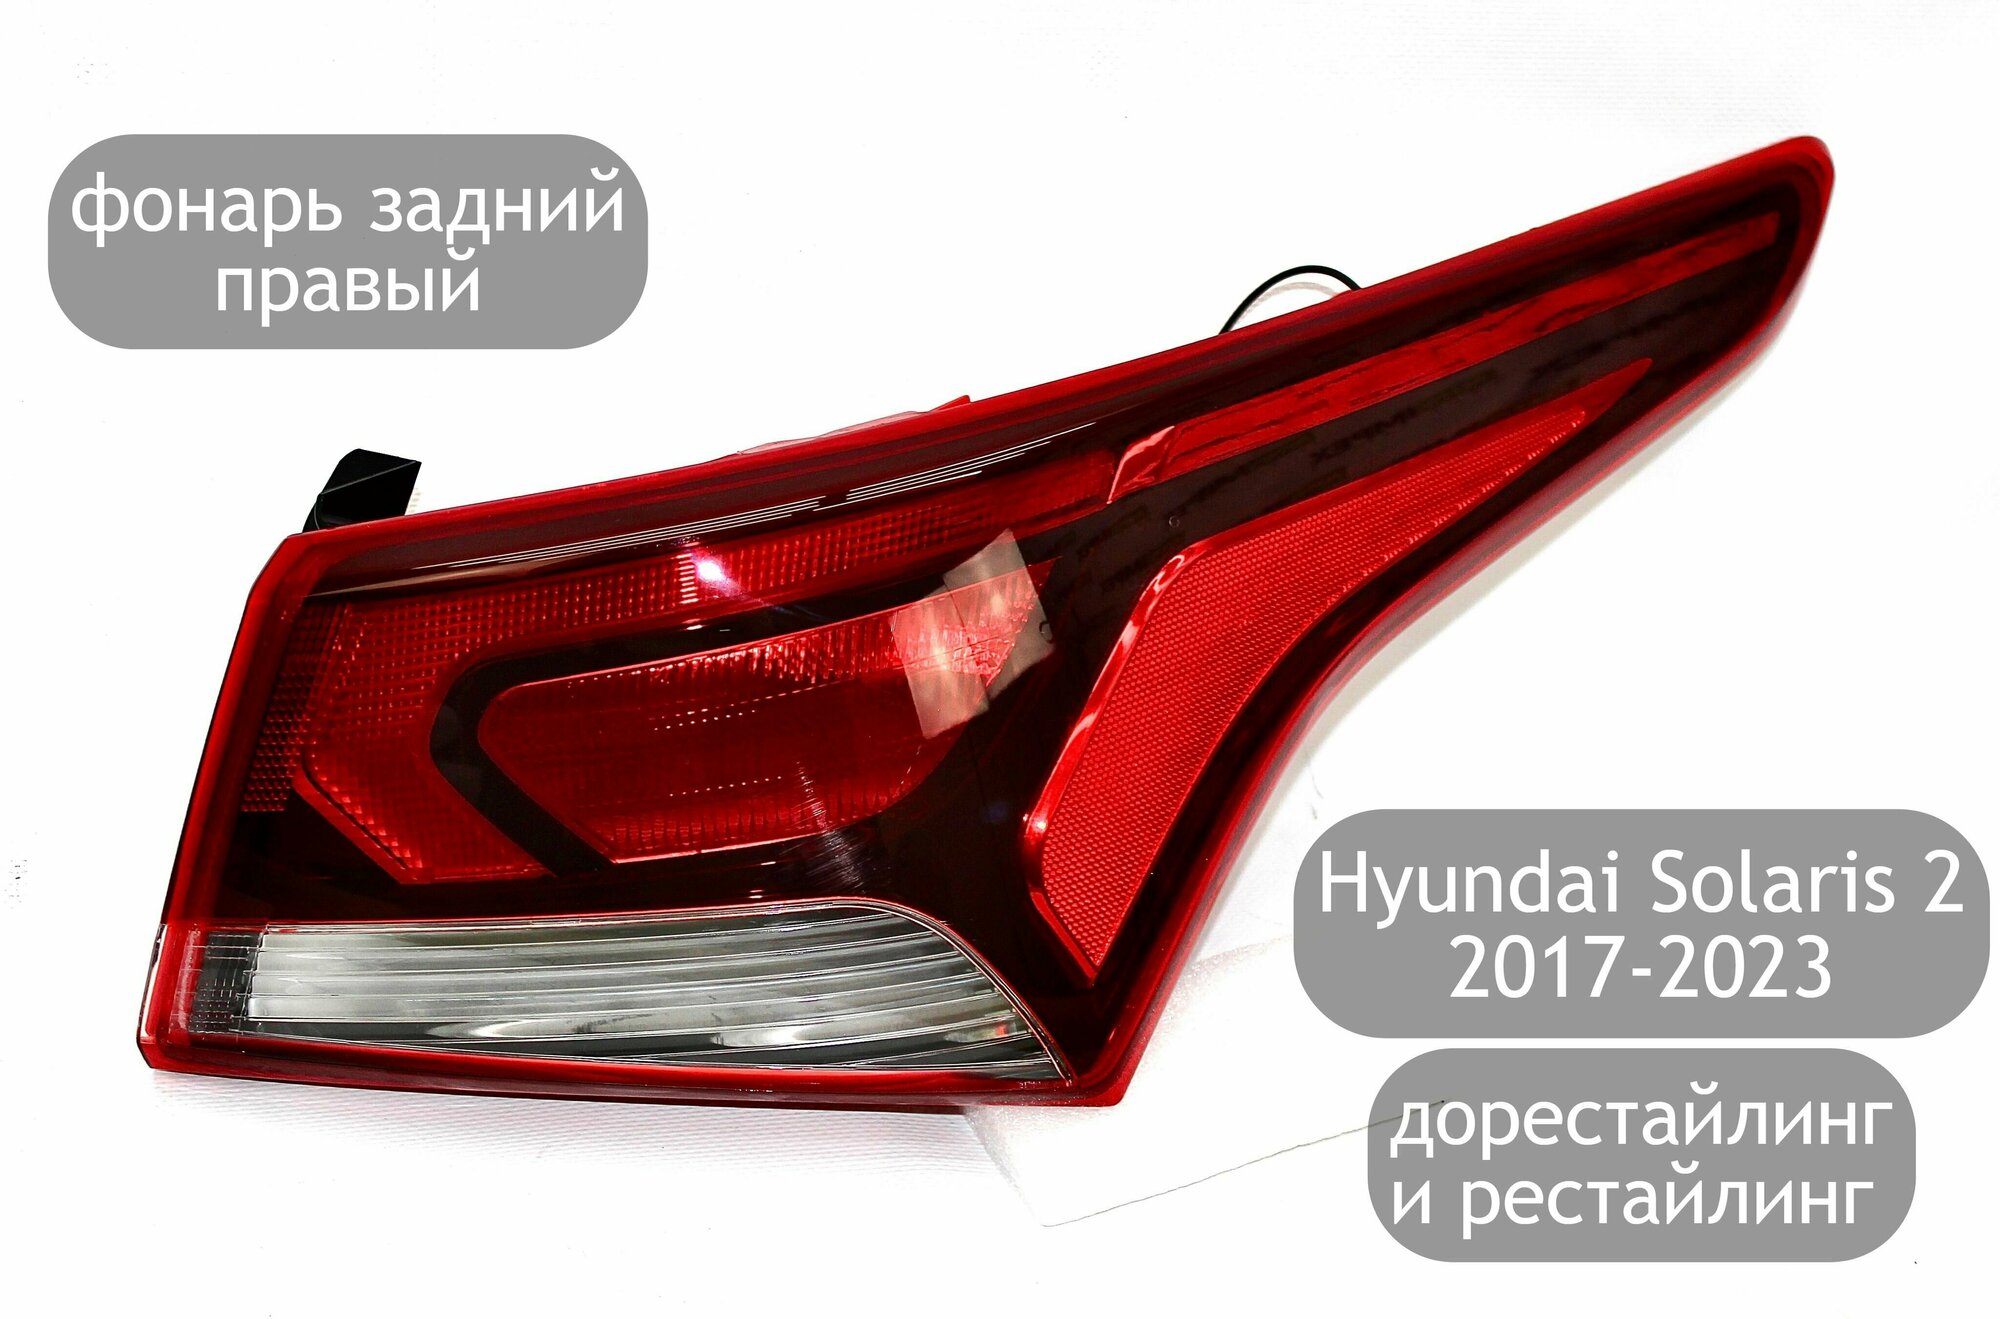 Фонарь задний правый для Hyundai Solaris 2 2017-2023 (дорестайлинг и рестайлинг)